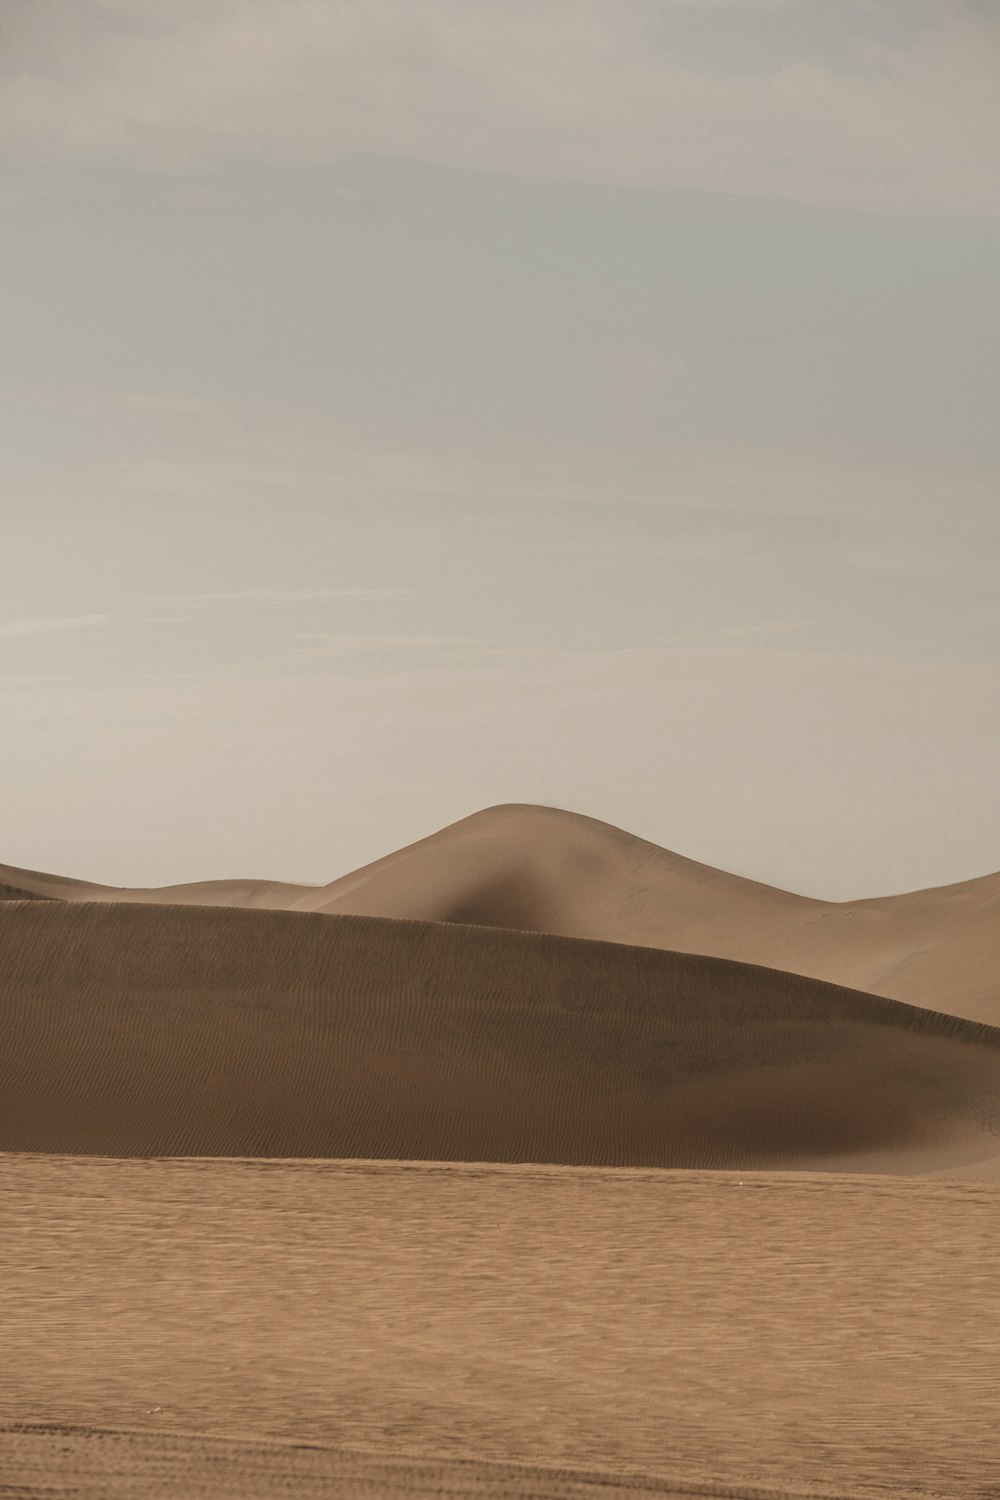 una persona montando a caballo en el desierto